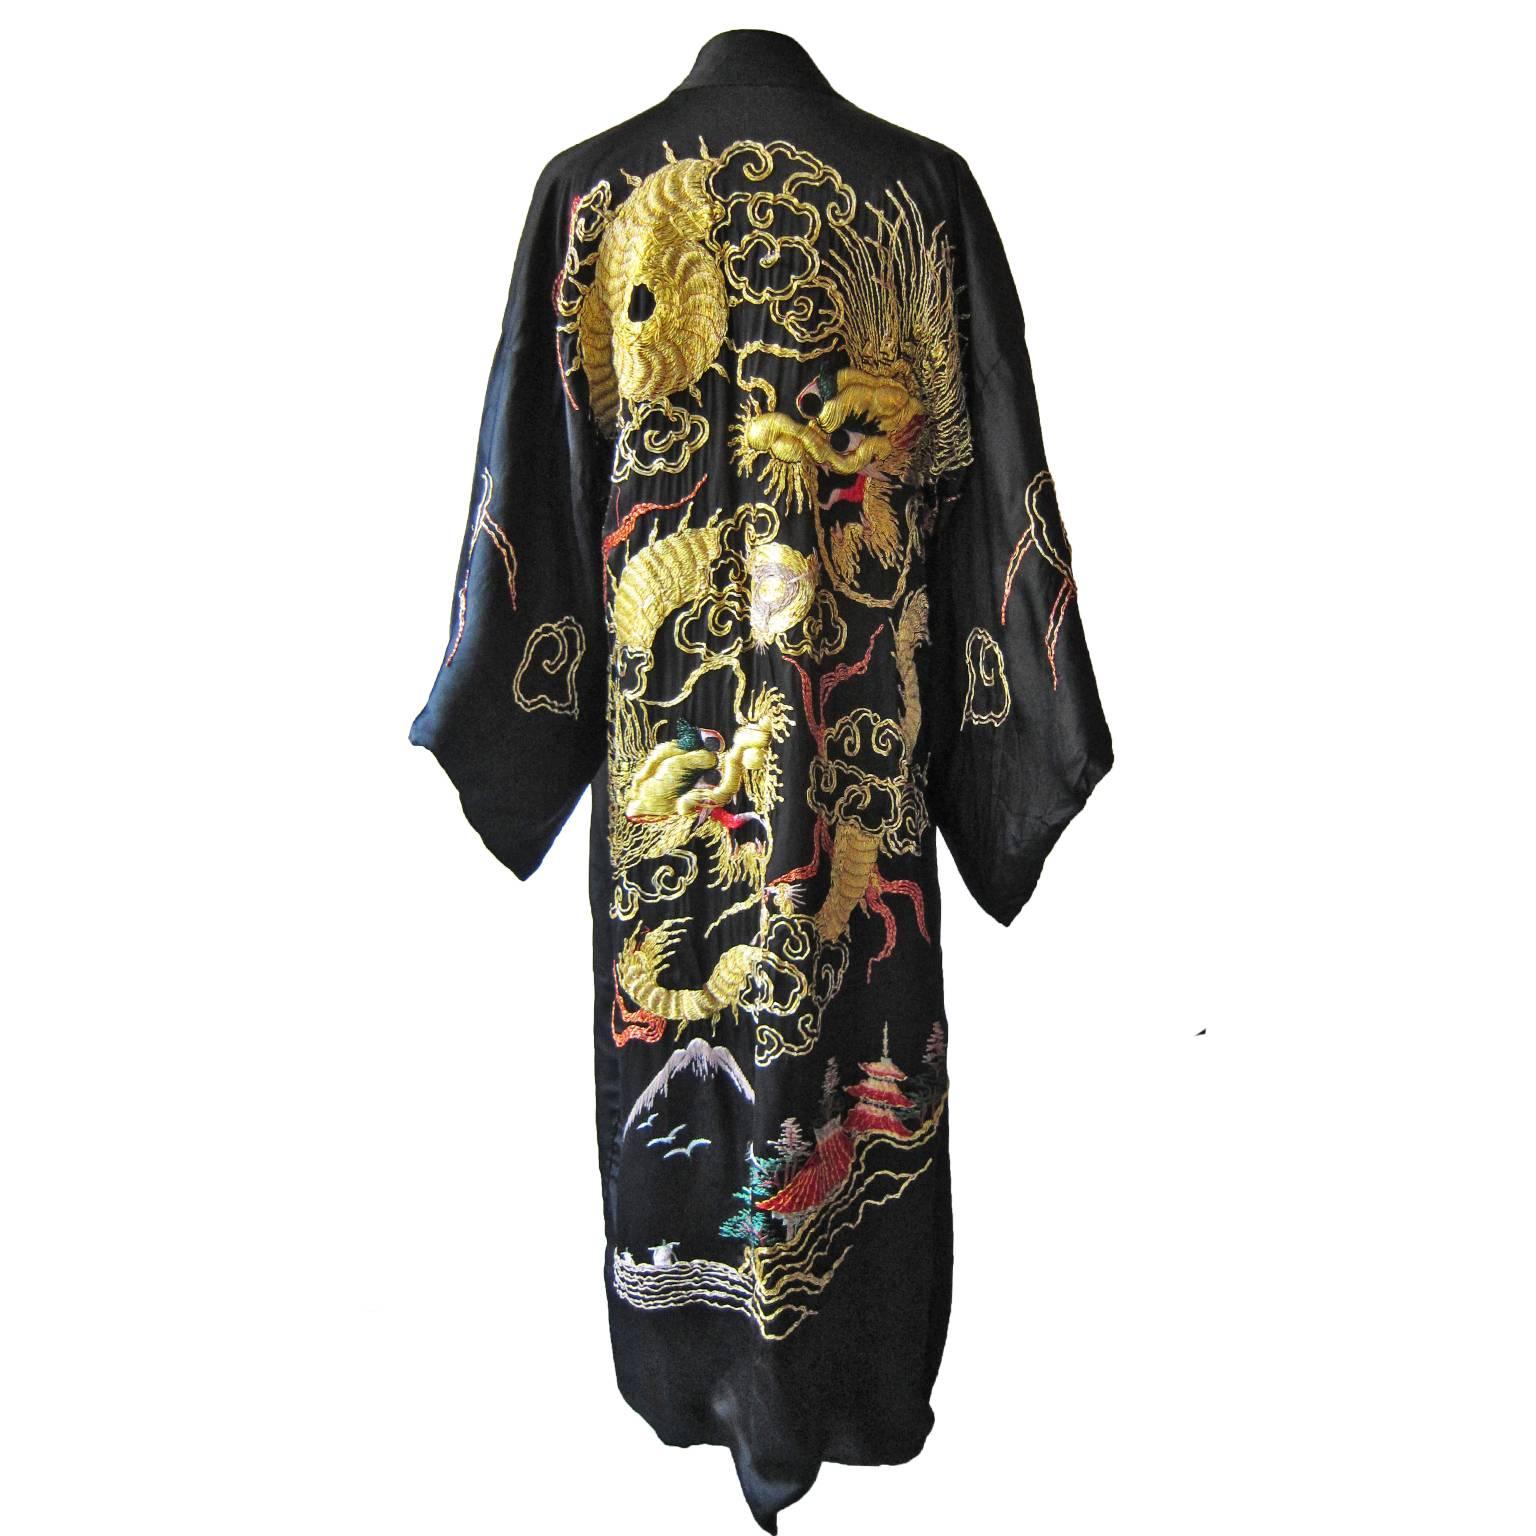 Golden Dragon Fuku Ryu Kimono Robe, 1940s